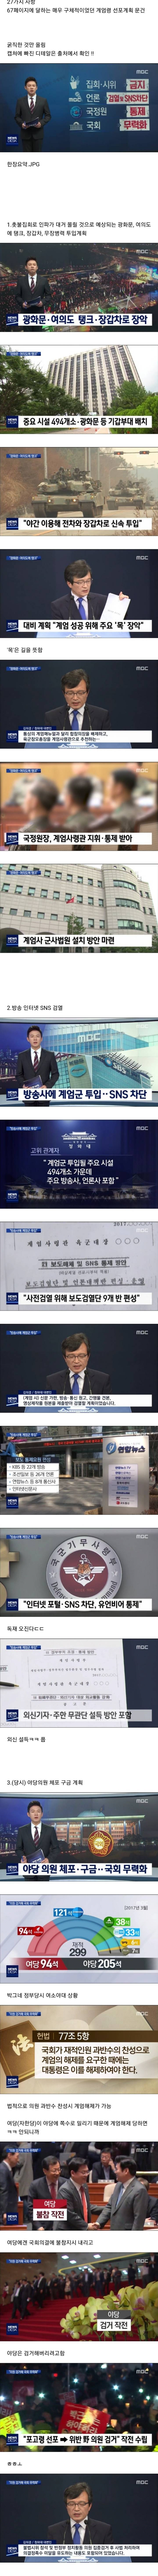 2018년 7월 20일 MBC뉴스에 보도된 기무사 계엄령 문건 세부내용 핵심만 매우 쉽게 요약 캡쳐.jpg | 인스티즈